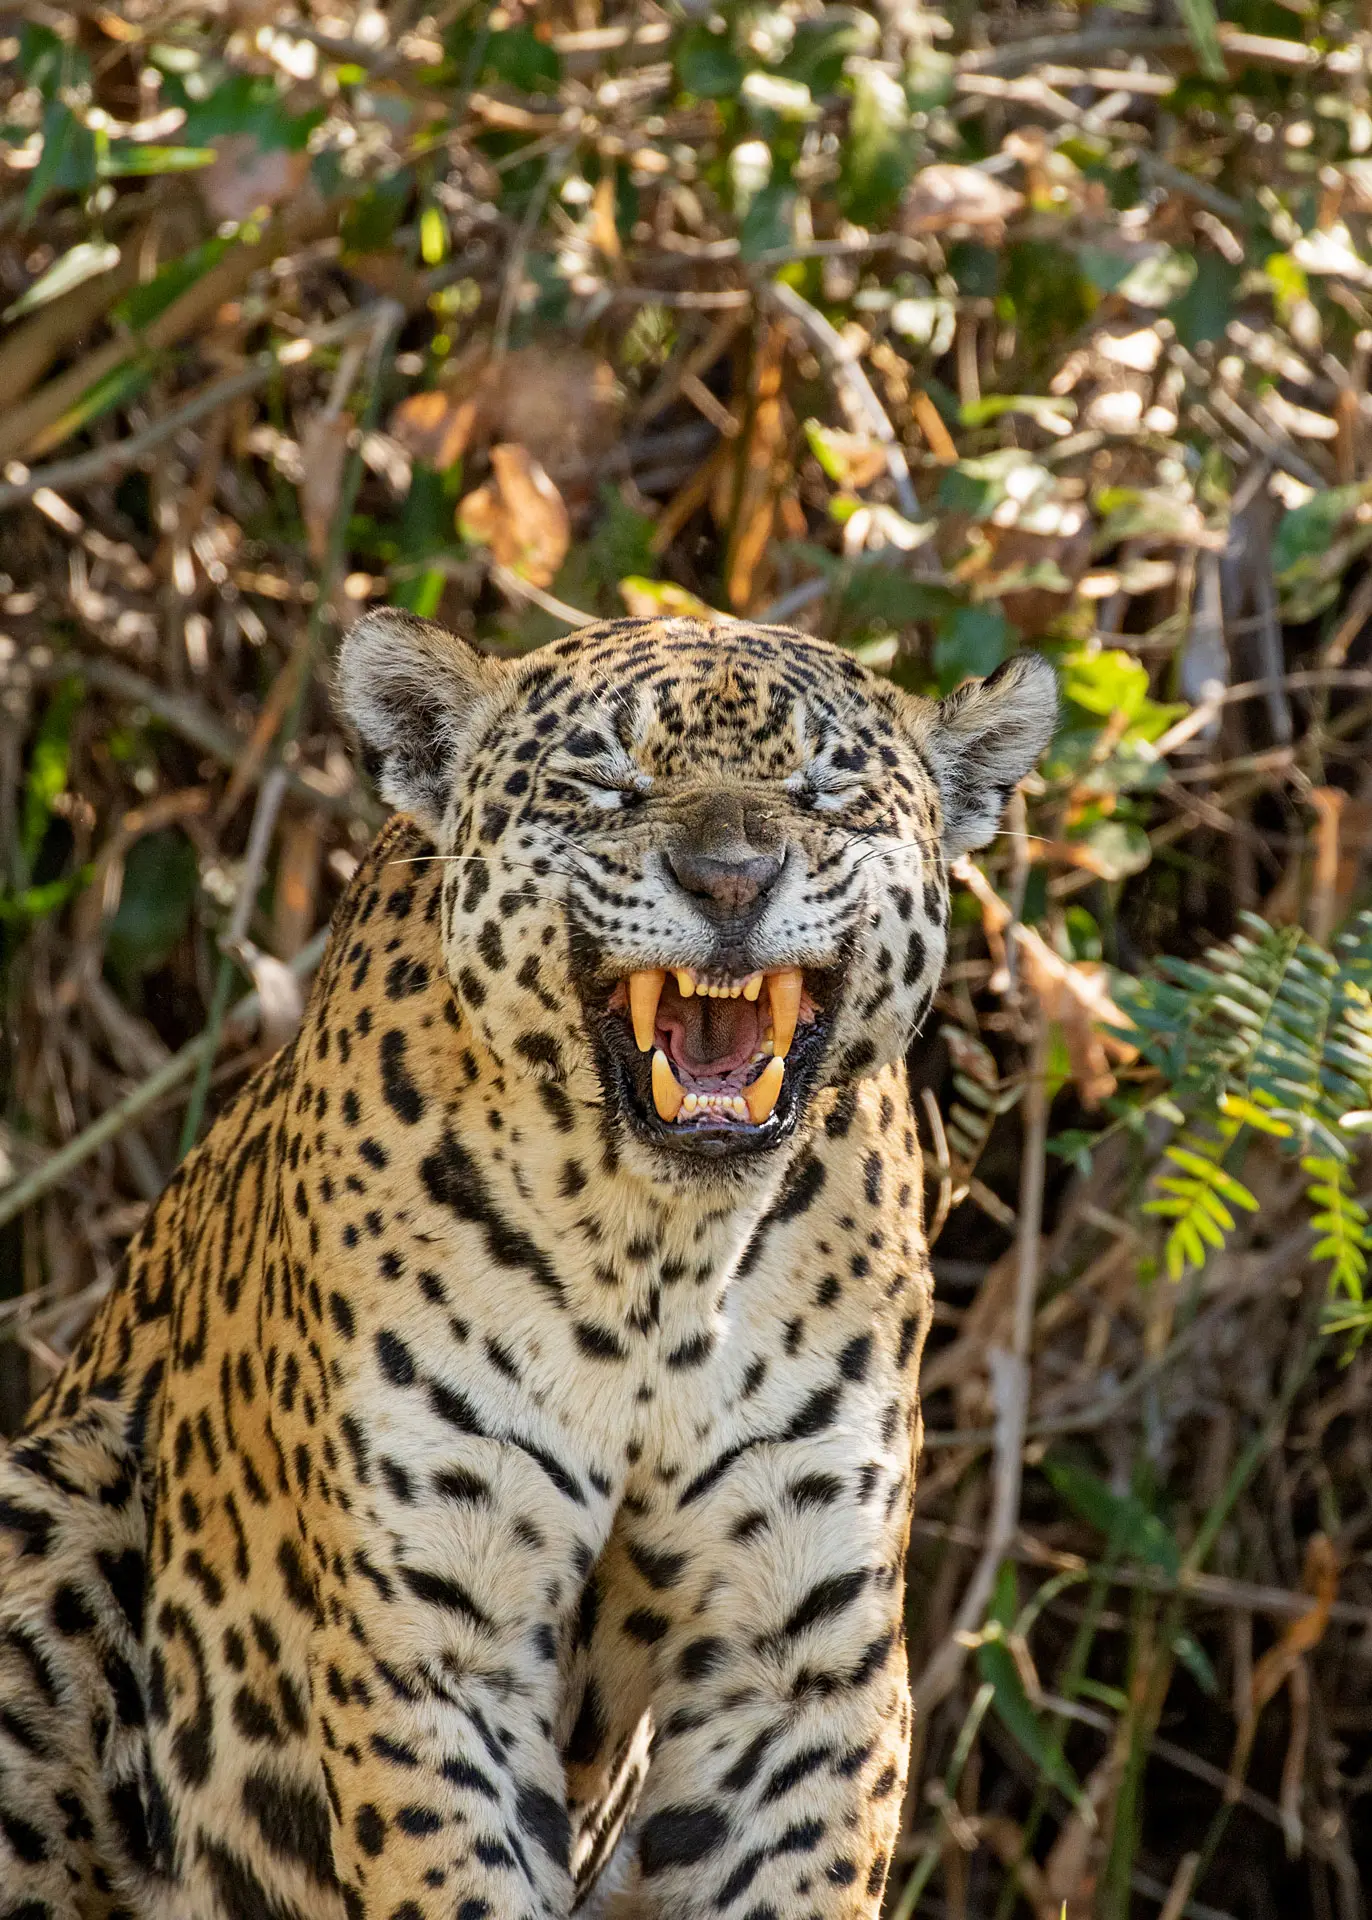 Panthera onca (Jaguar), Photo Caio Brito